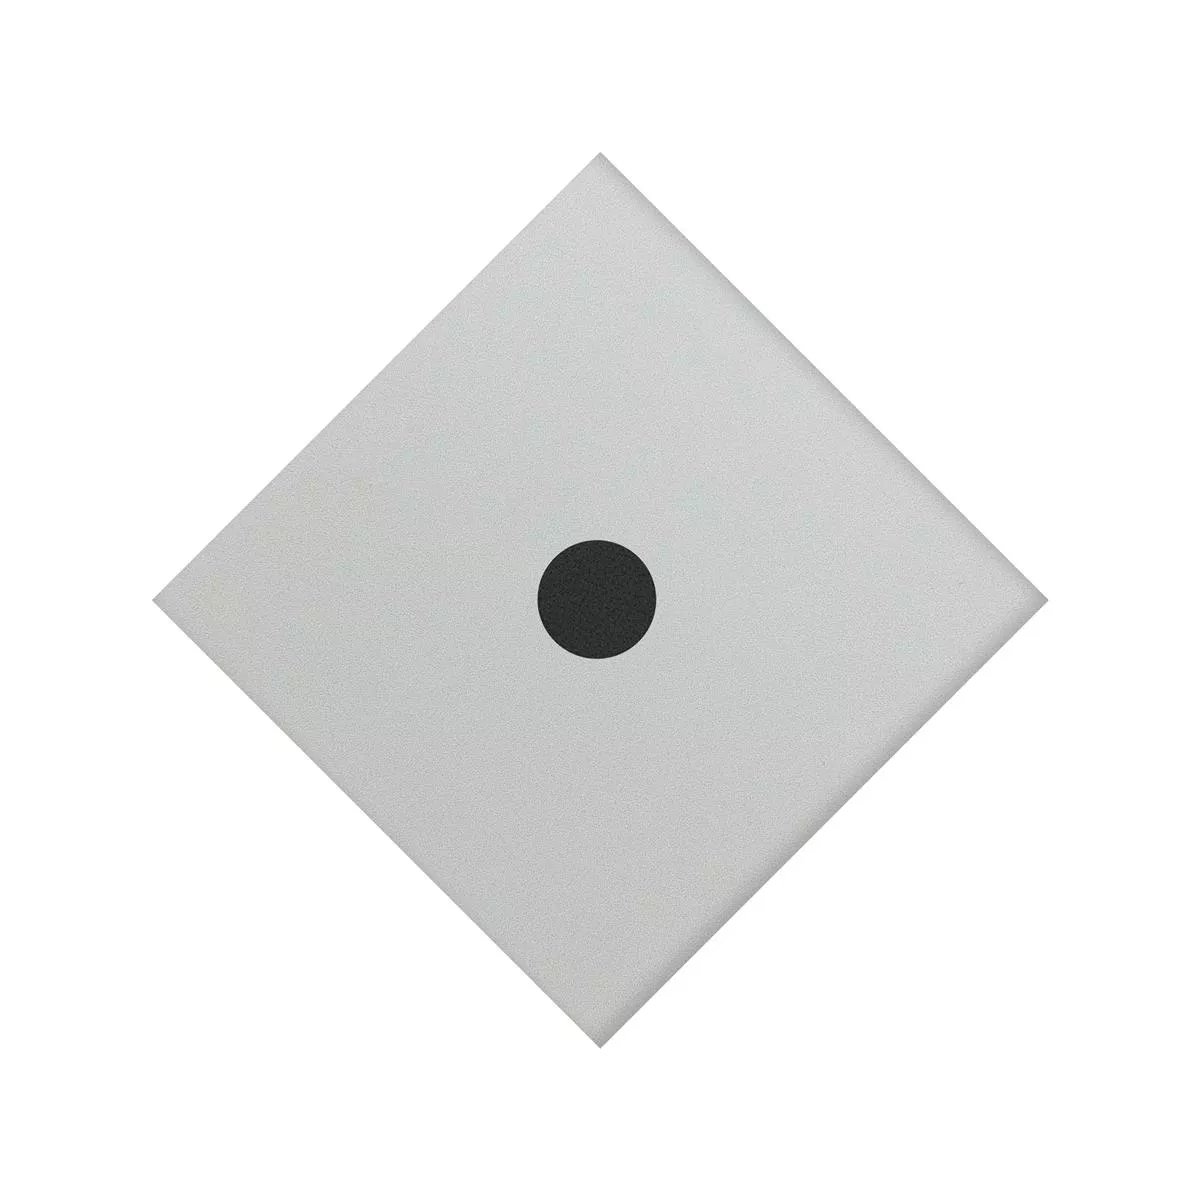 Gresie Portelanata Gresie Genexia Negru Alb Decor 3 Rosone  4,6x4,6cm